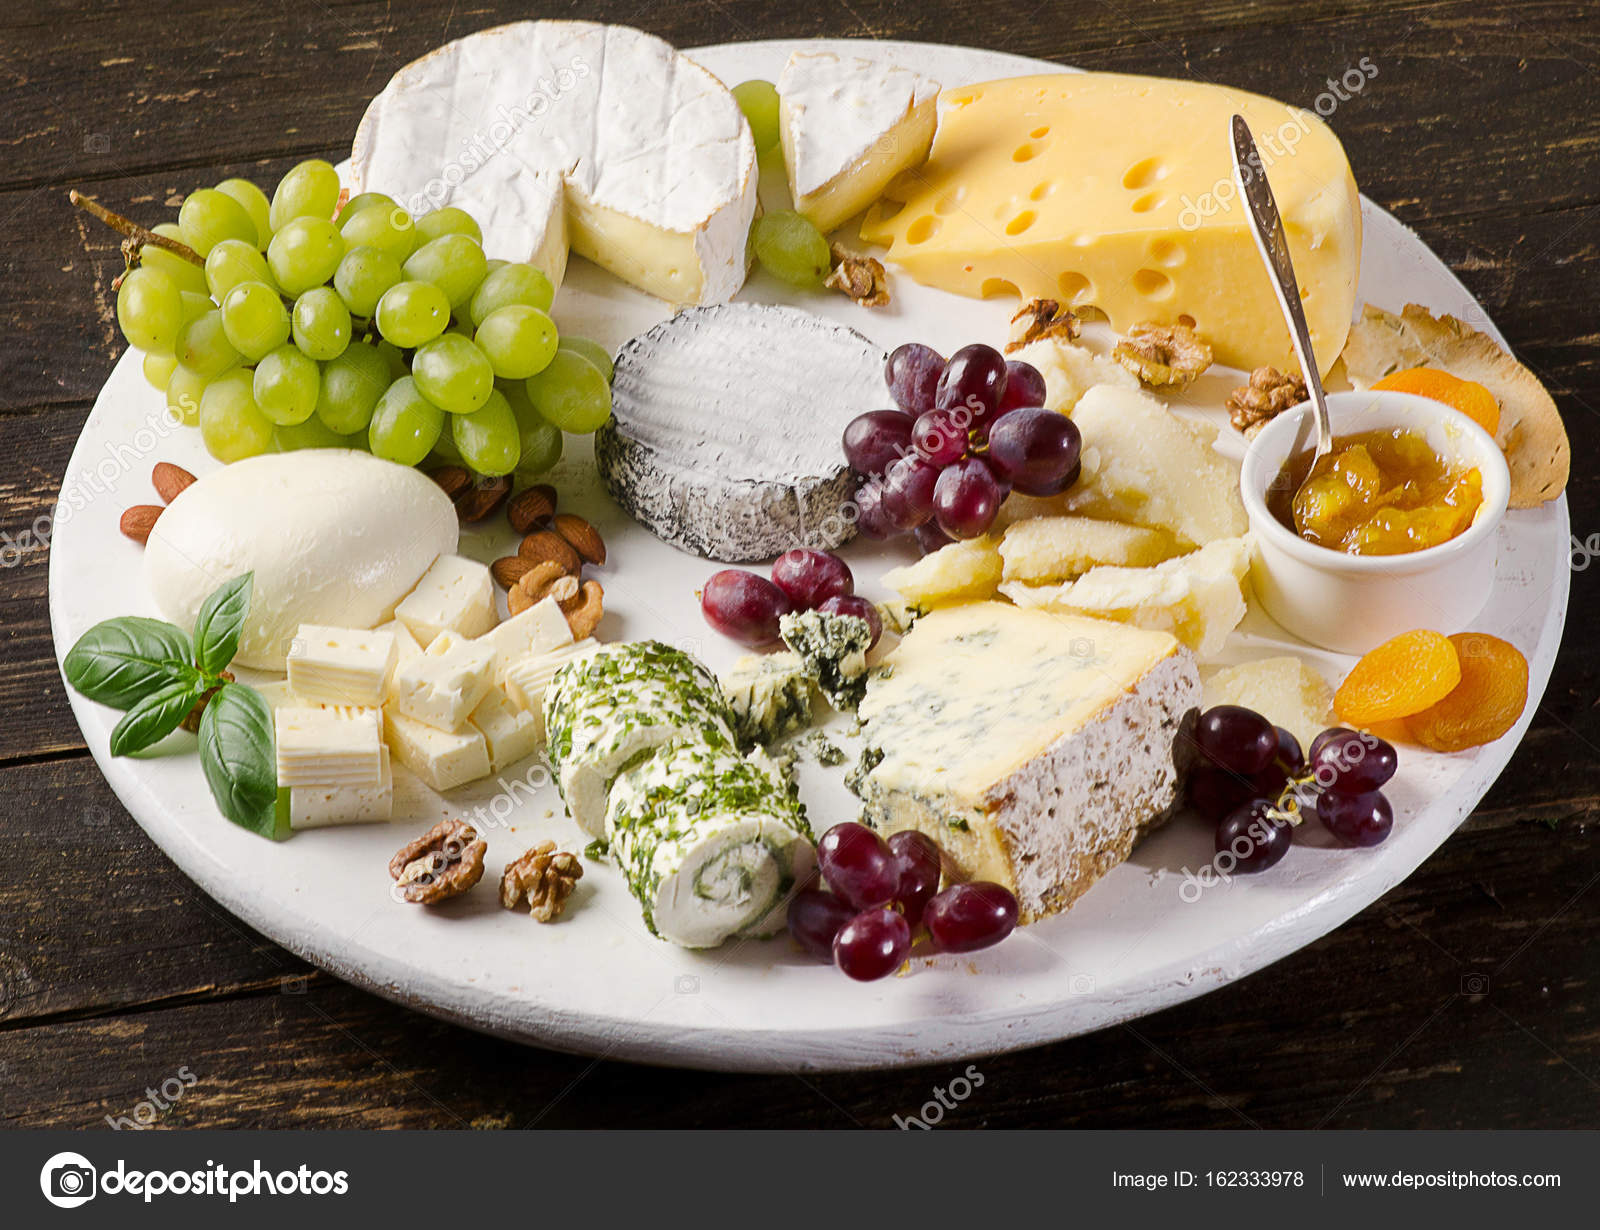 Белые блюда. Сырная тарелка с виноградом и орехами. Сырная тарелка с виноградом. Французская сырная тарелка. Сервировка сырной тарелки.